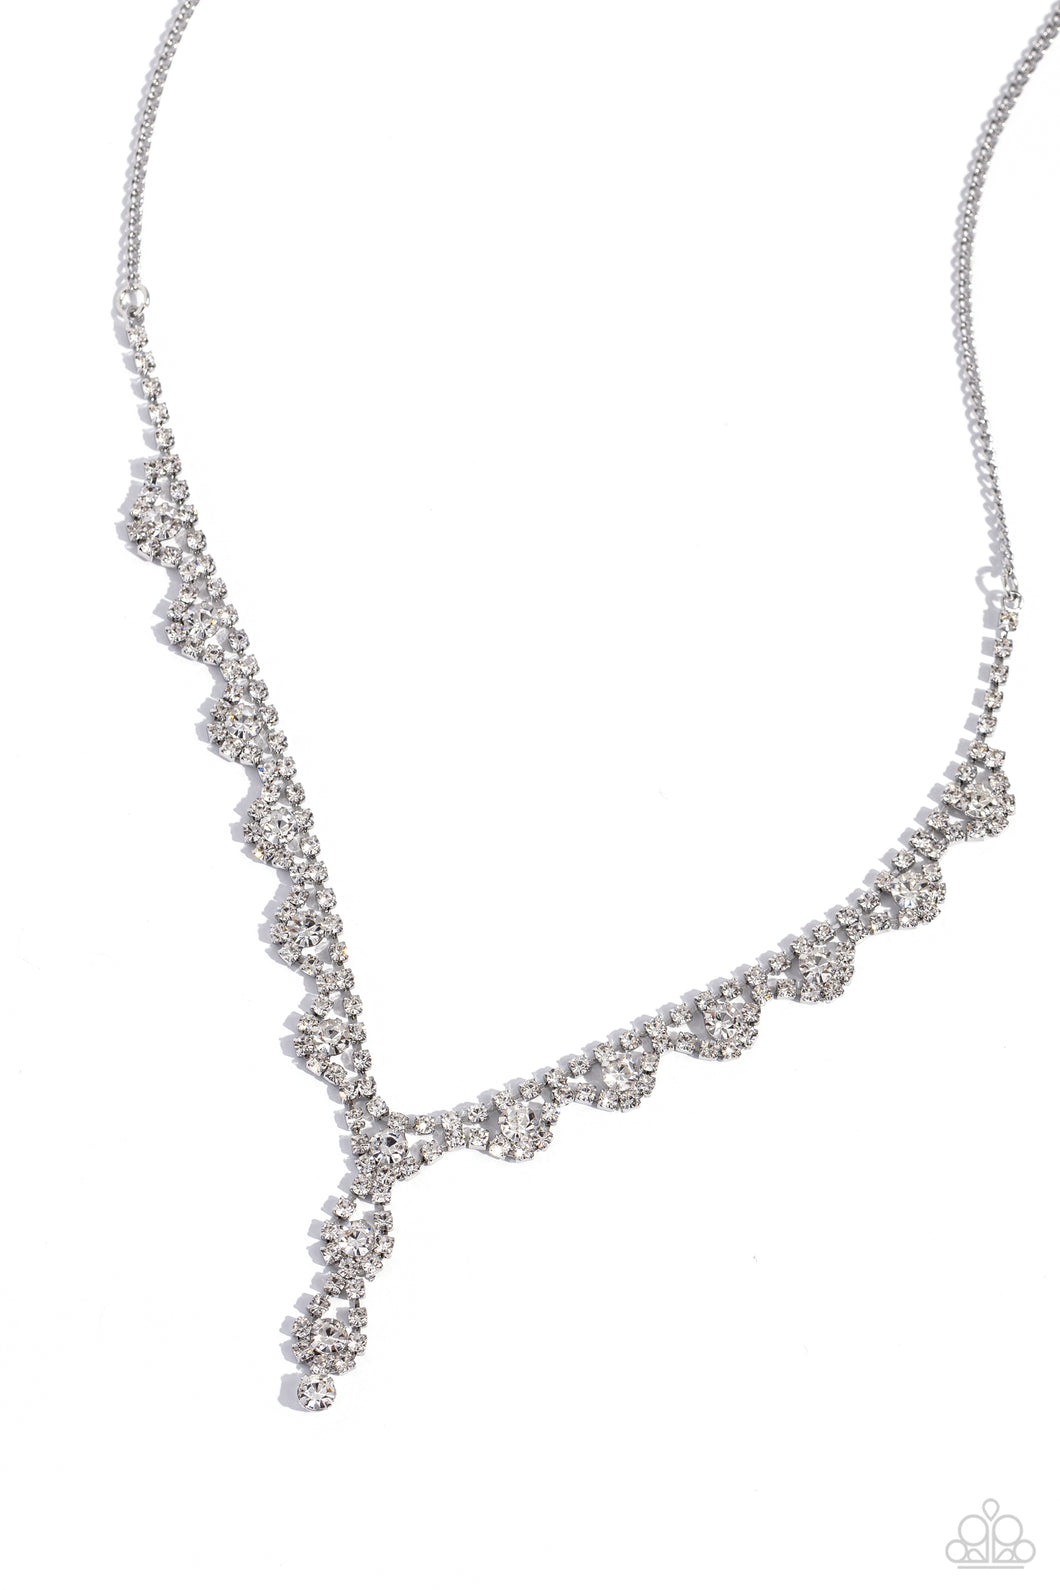 Paparazzi Executive Embellishment - White Necklace